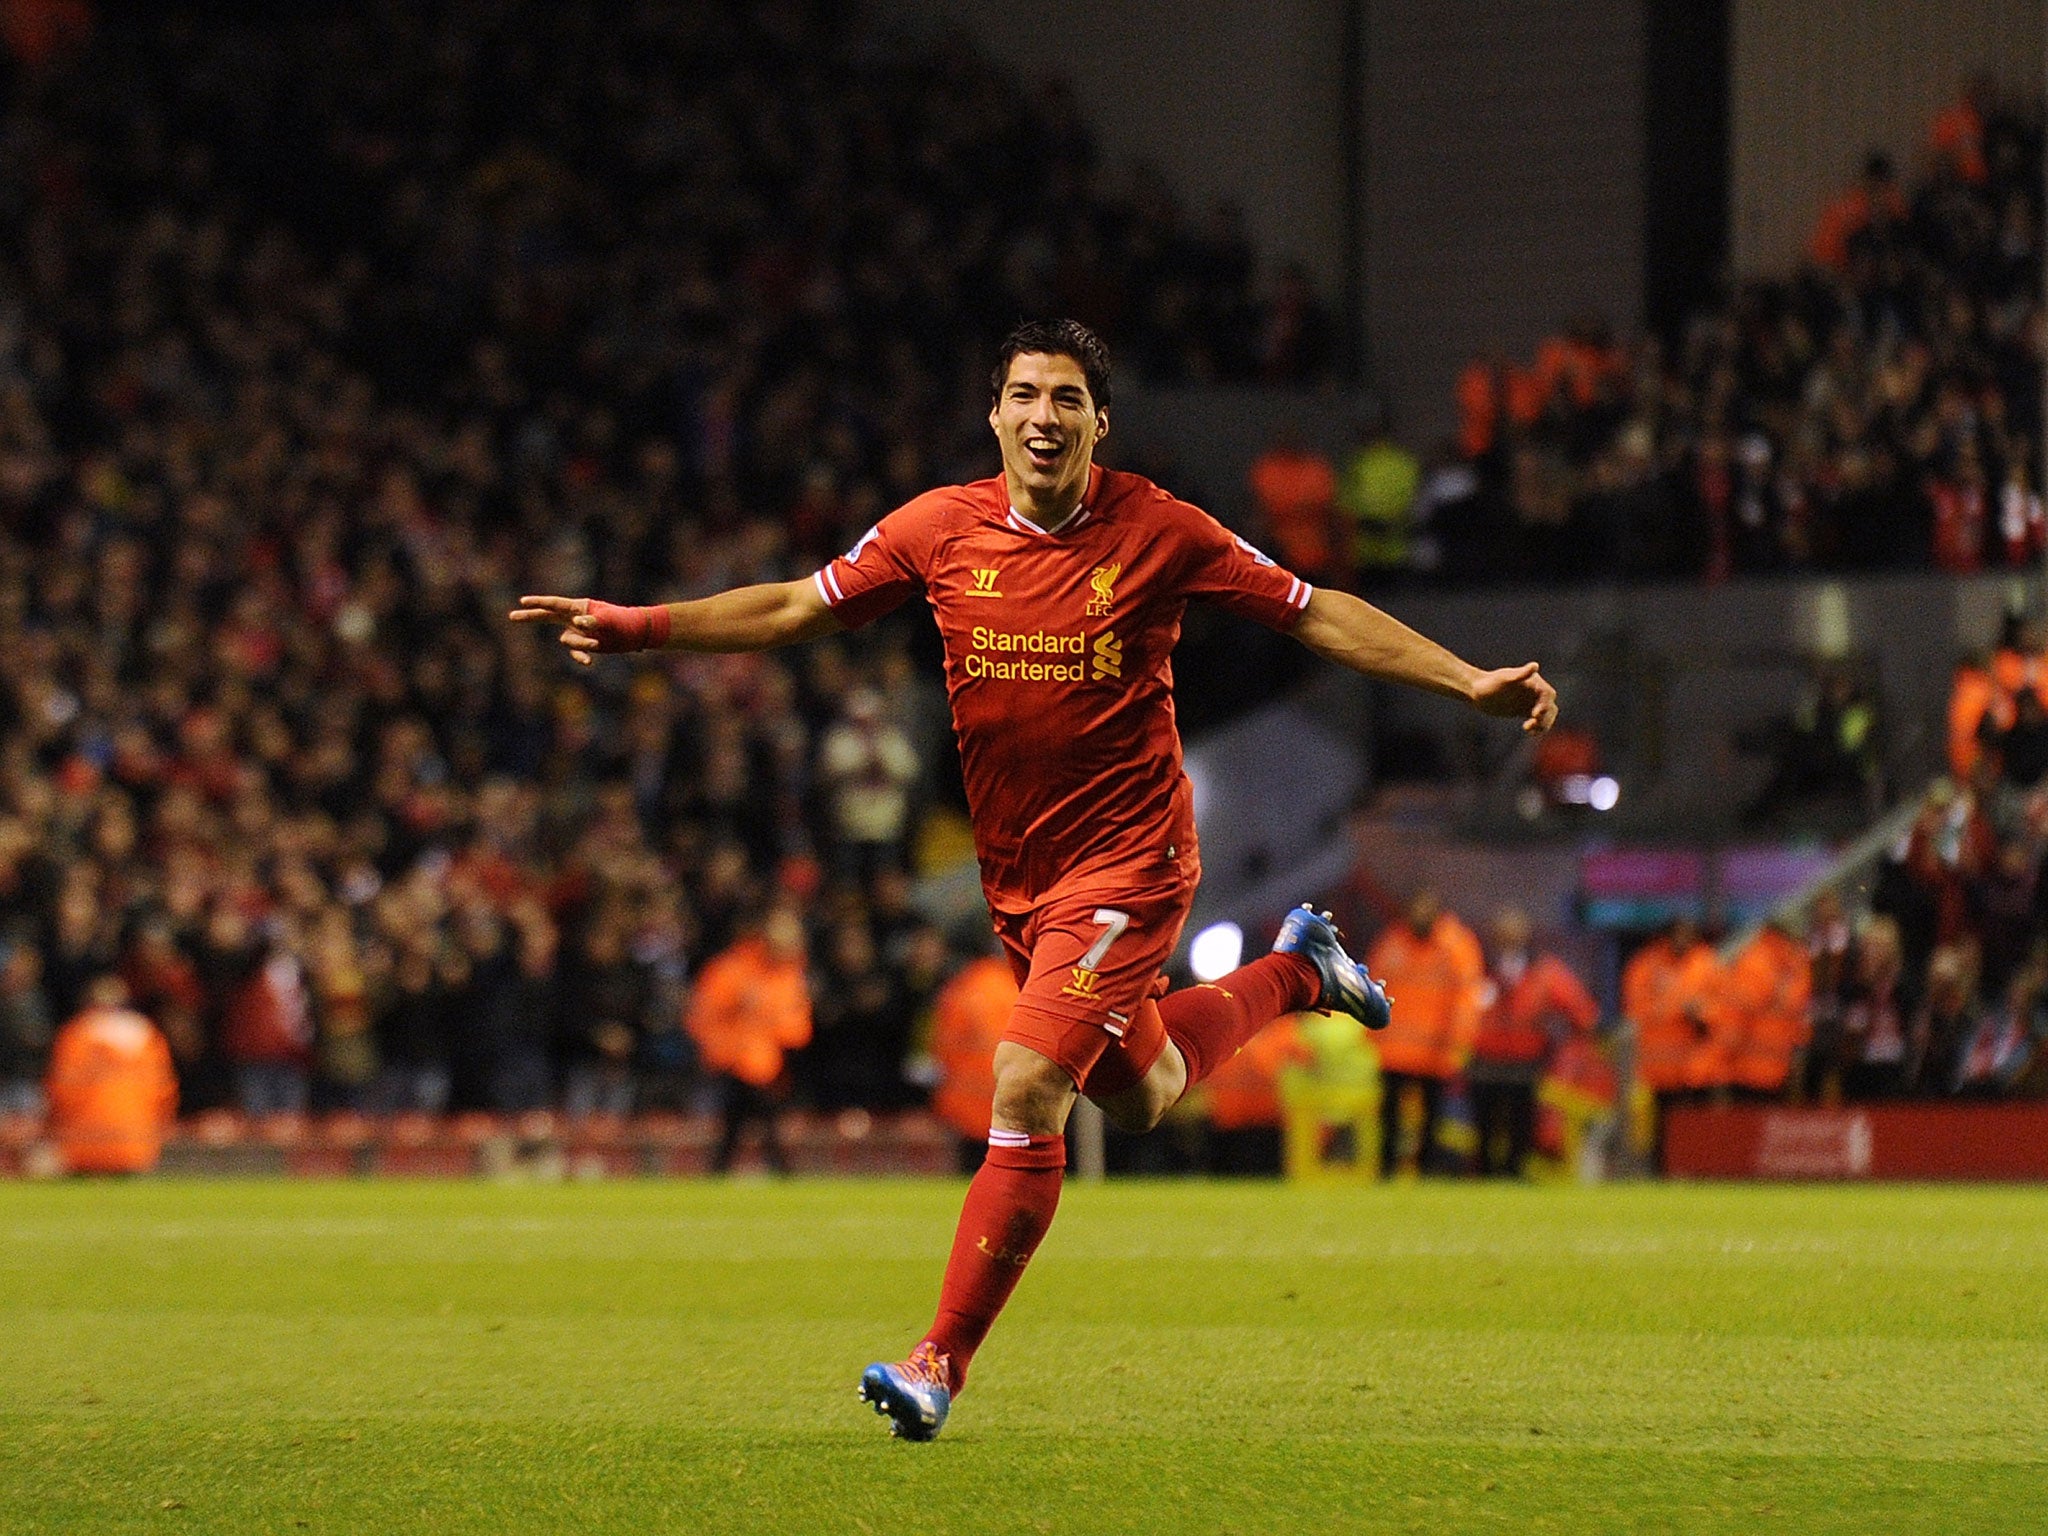 Luis Suarez celebrates after scoring four goals against Norwich